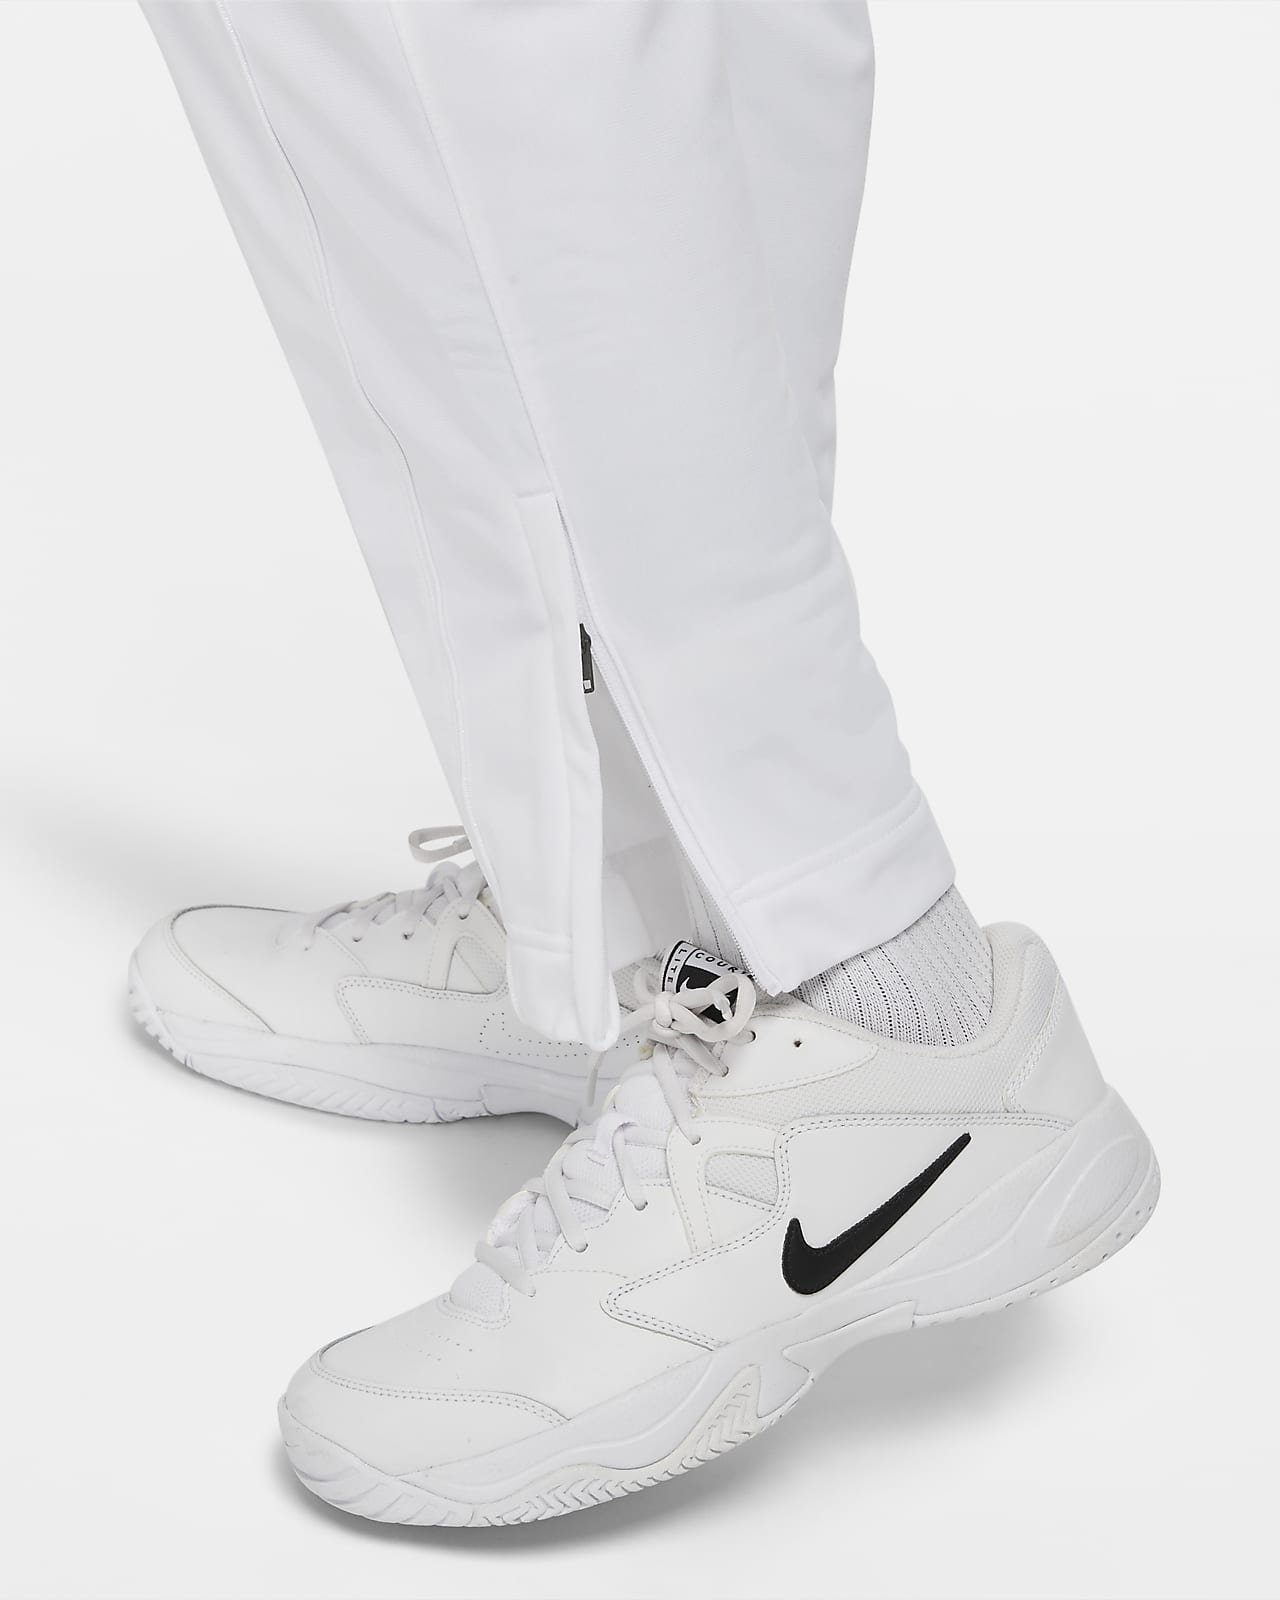 Pantalones tenis para hombre Nike.com